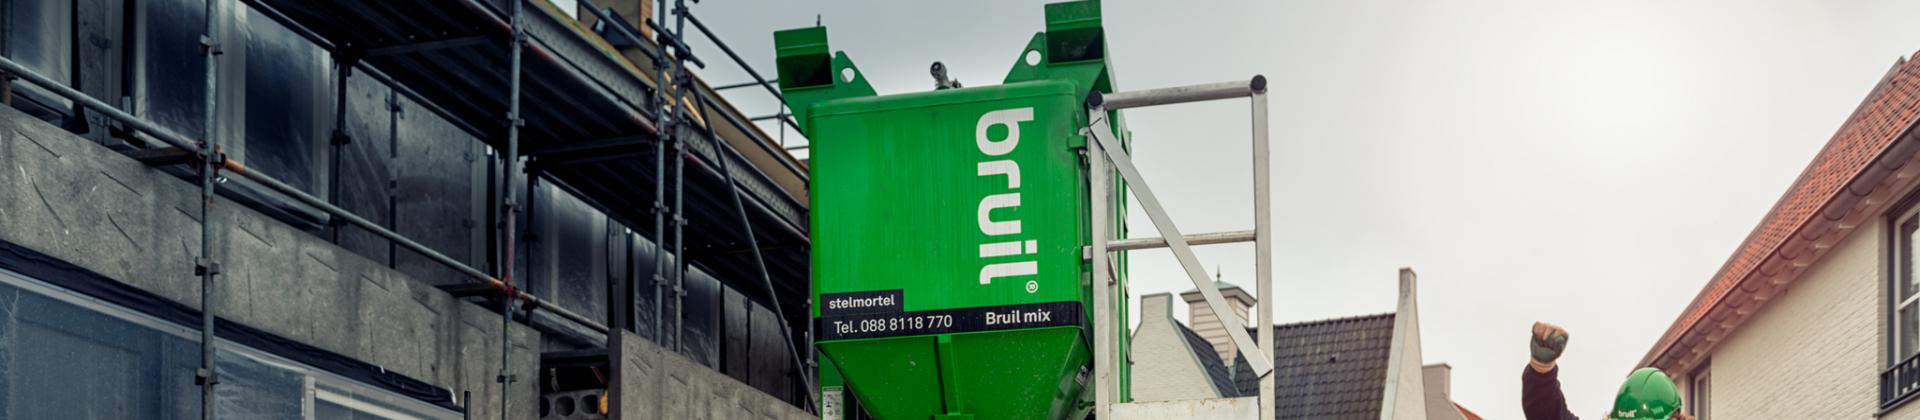 Afvalvrij werken met Bruil silo- service 